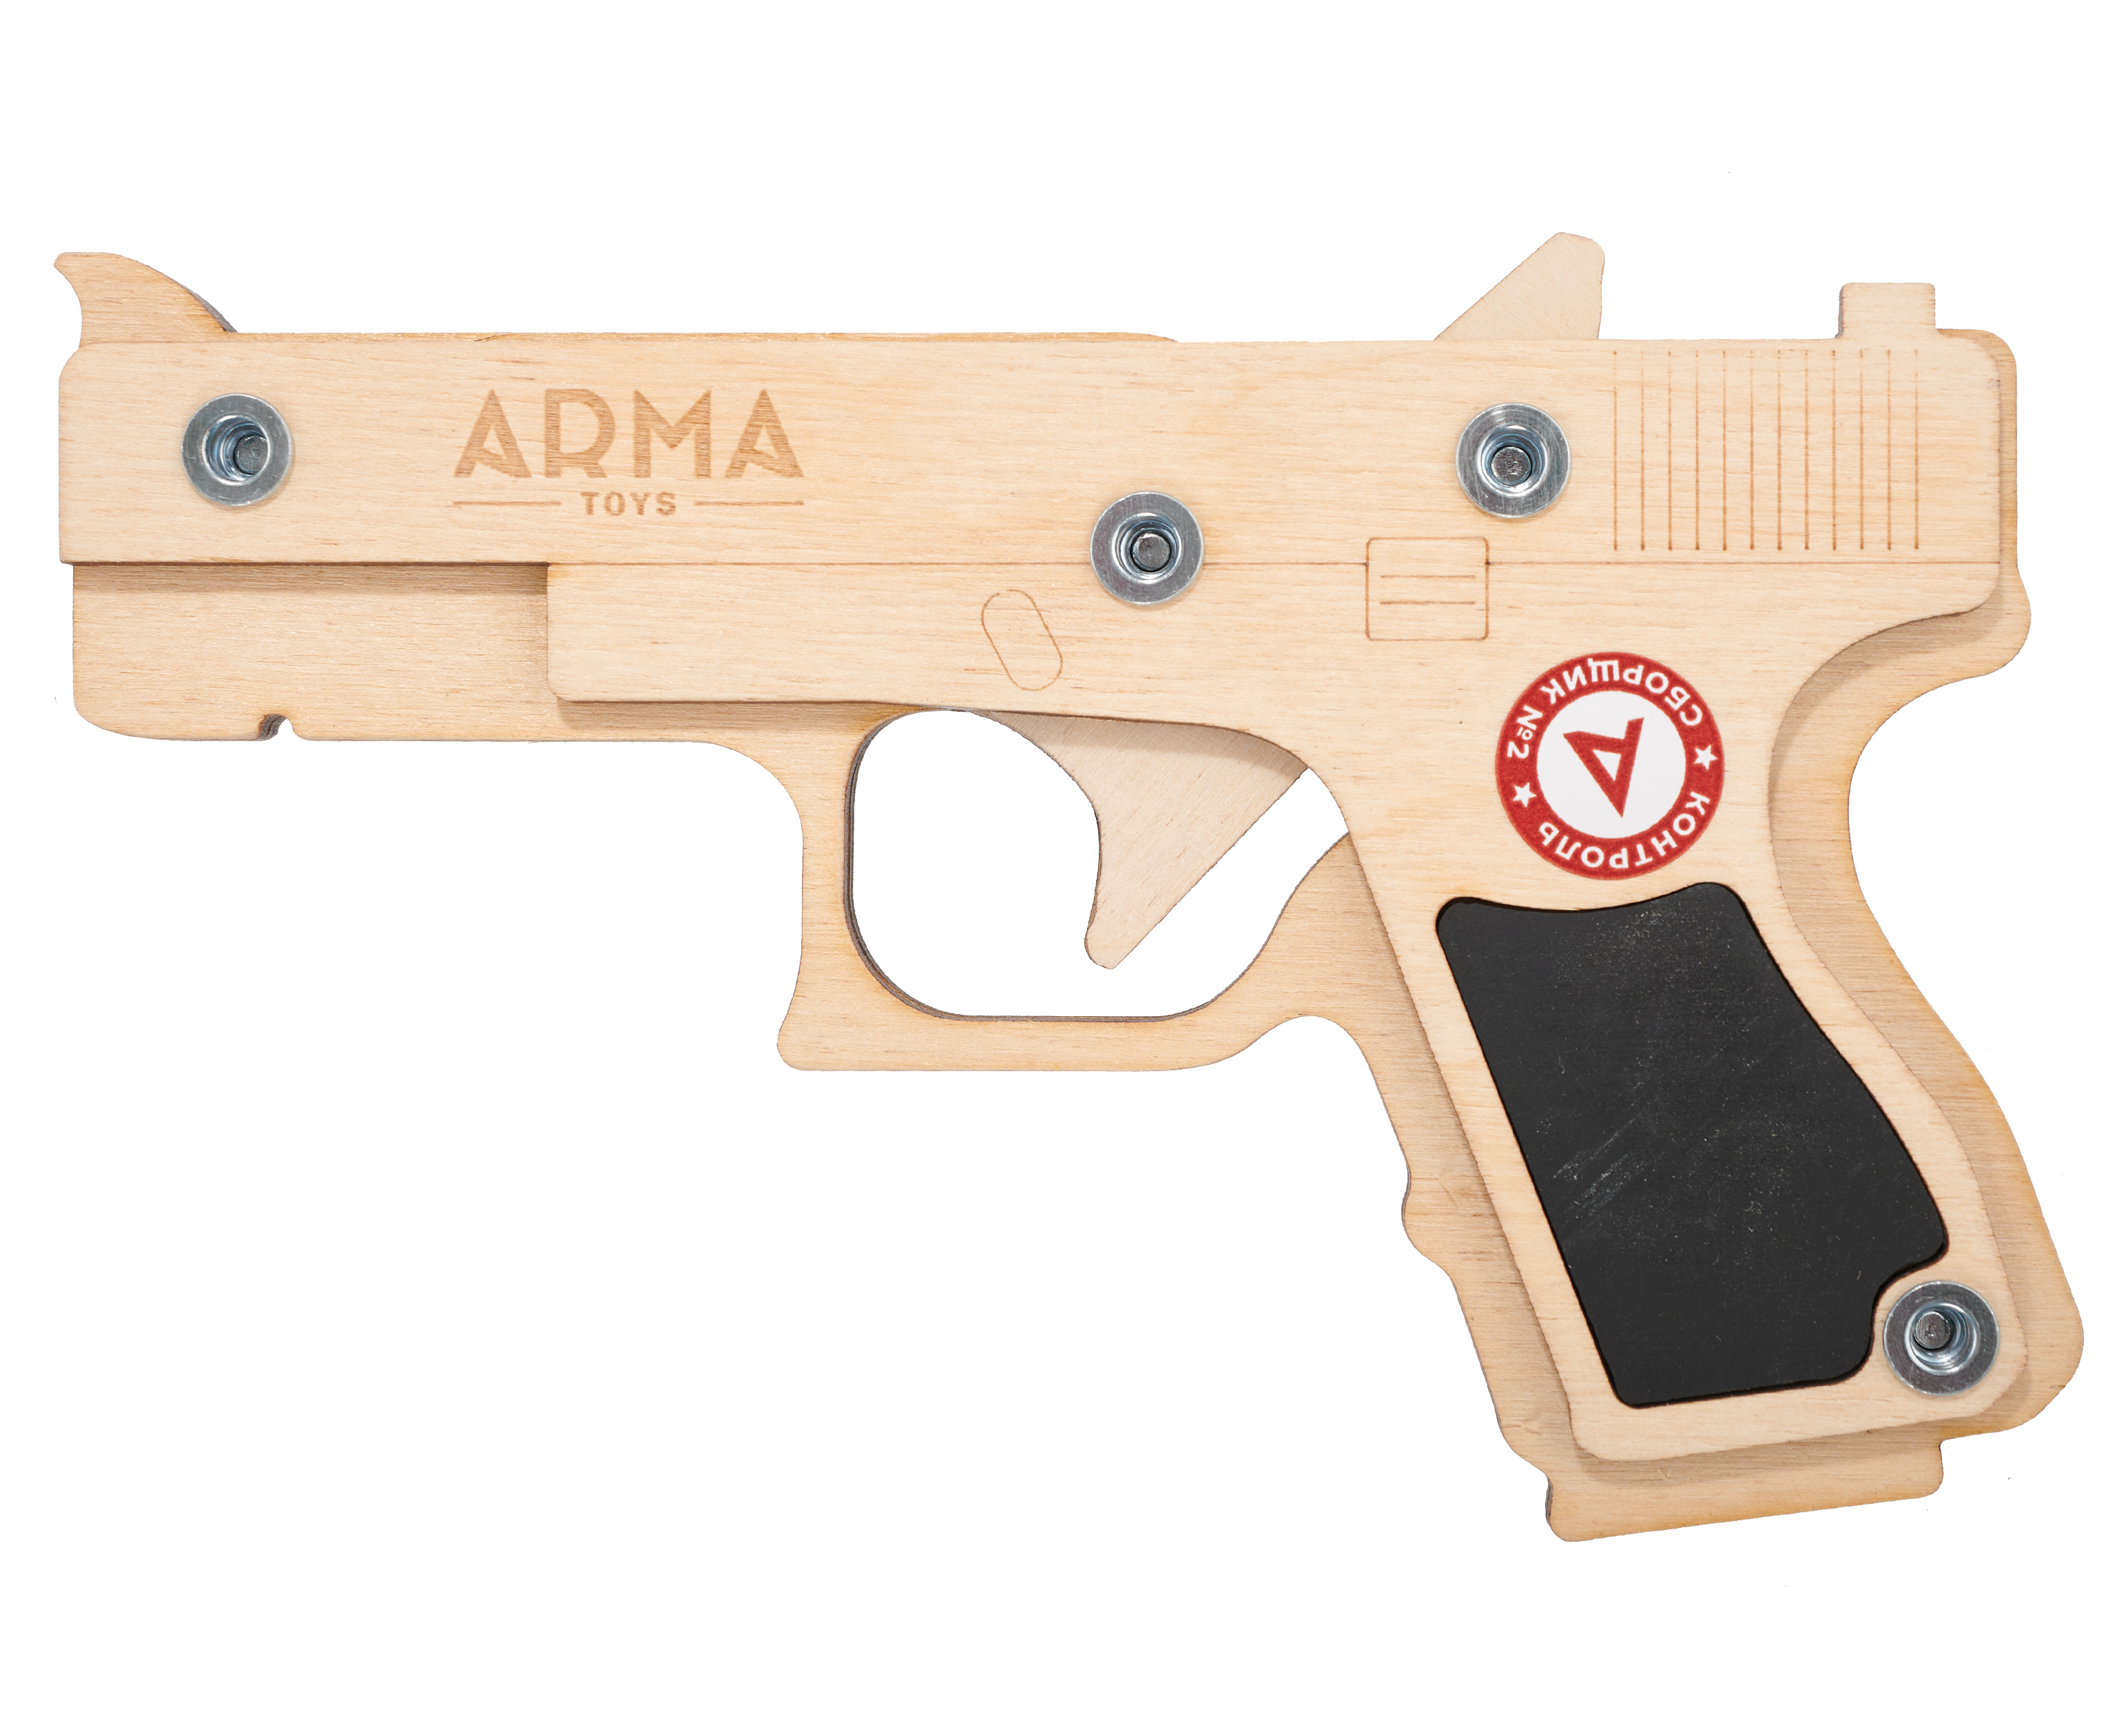 Резинкострел игрушечный Arma toys пистолет Glock макет, Compact, ATL001 резинкострел arma toys пистолет тт тульский токарева